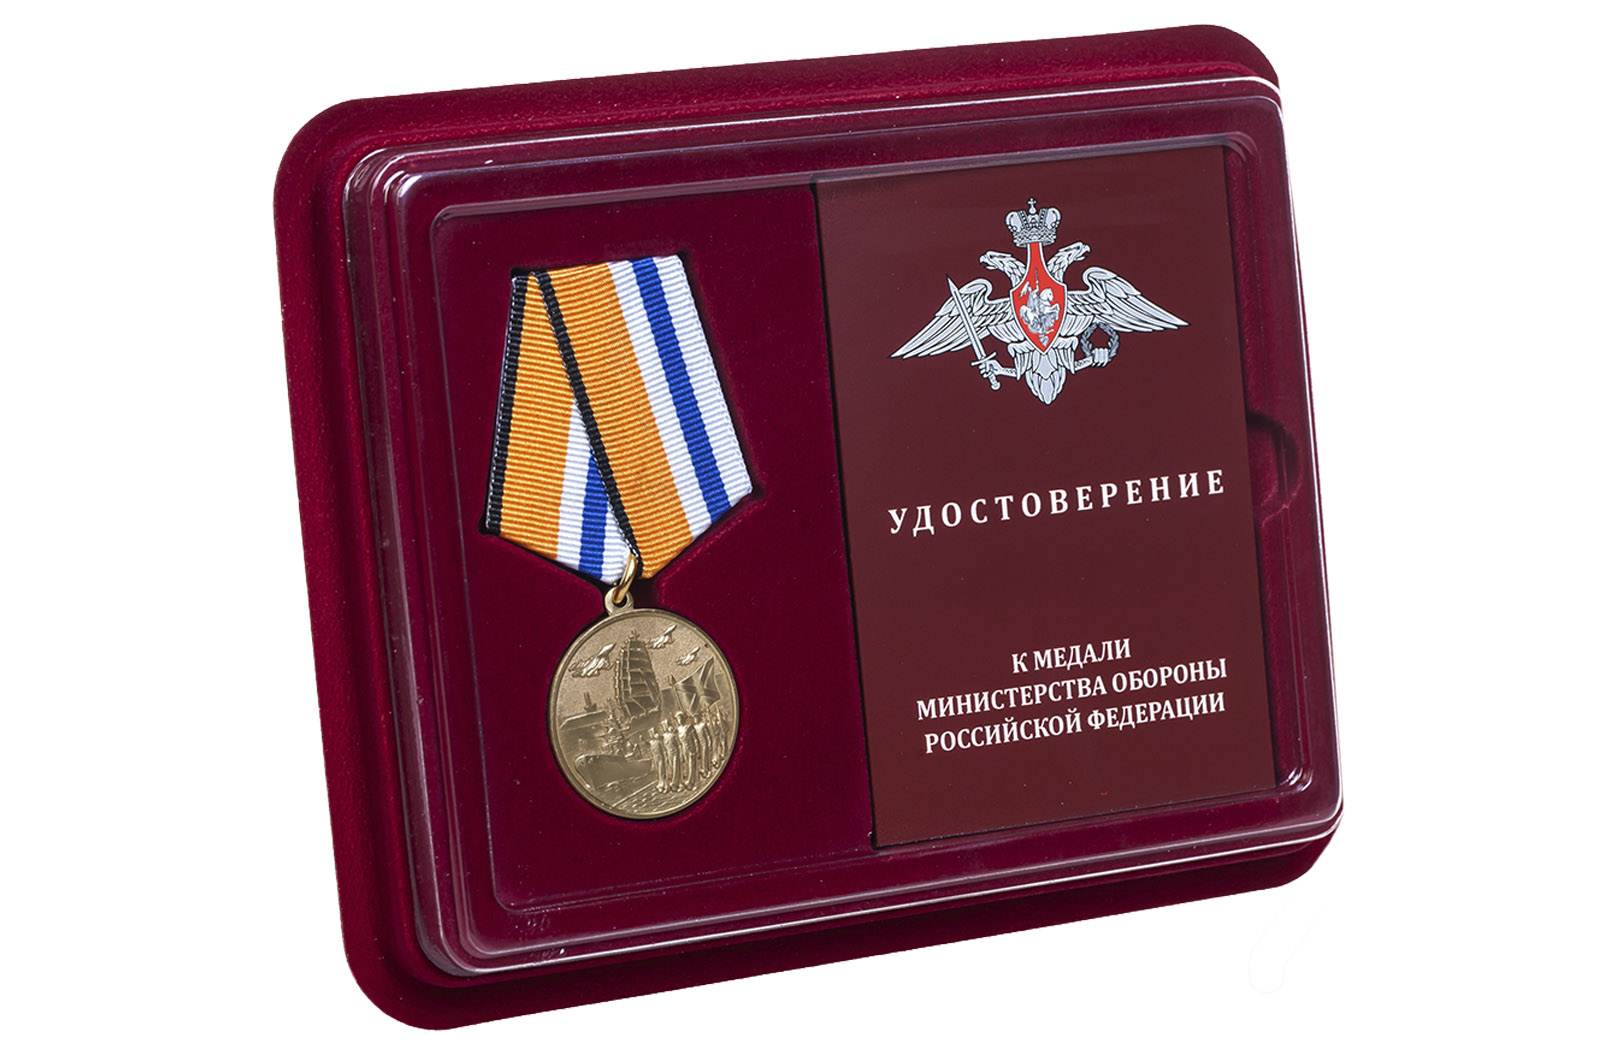 Купить памятную медаль За участие в Главном военно-морском параде оптом или в розницу